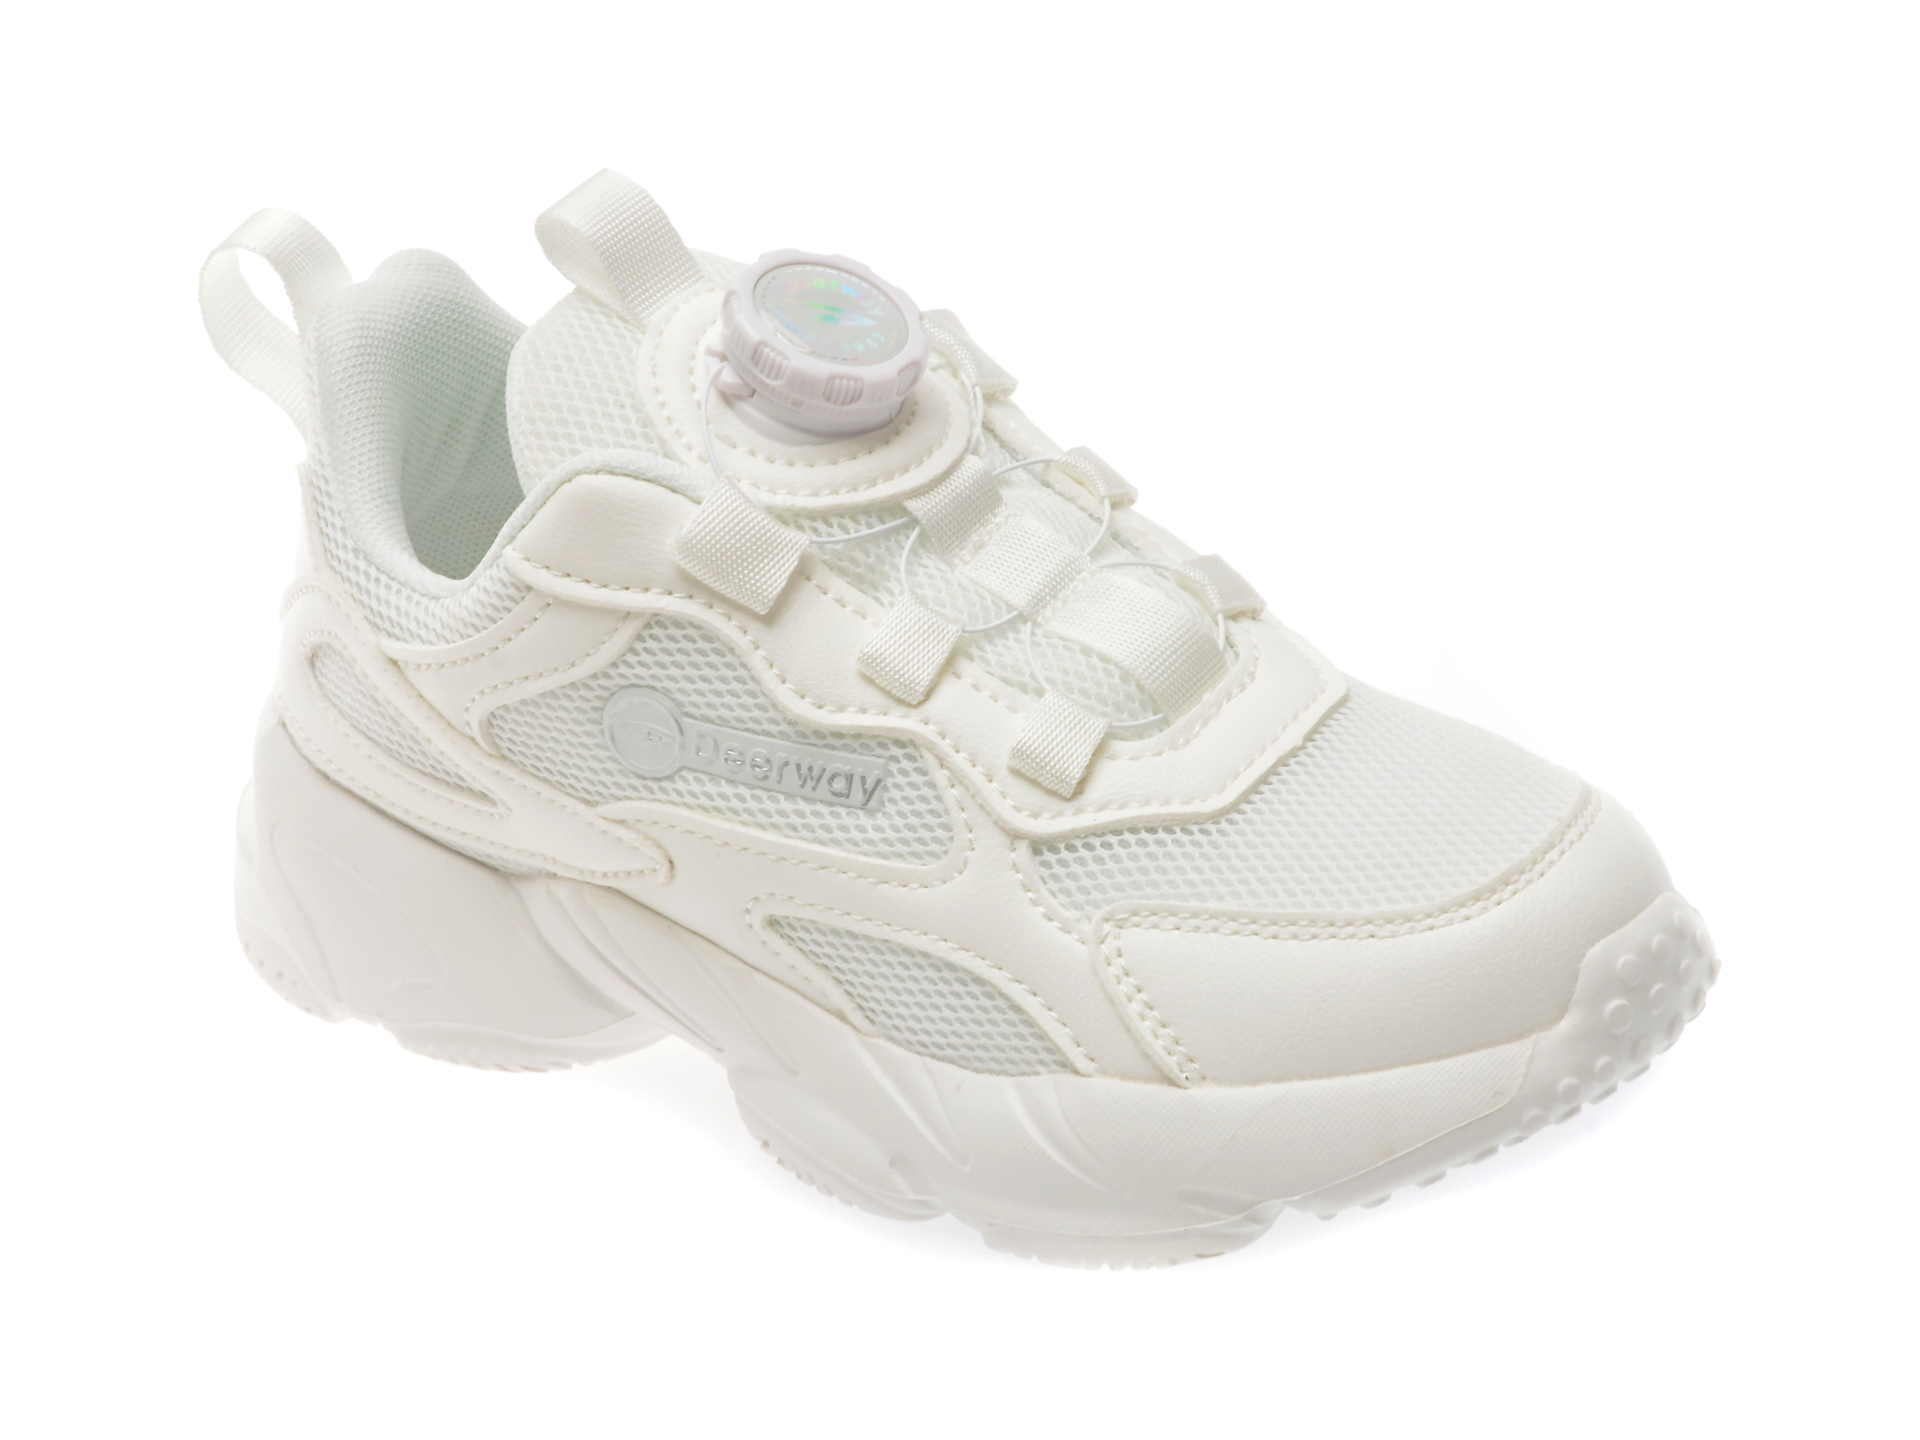 Pantofi sport DEERWAY albi, D6602, din material textil